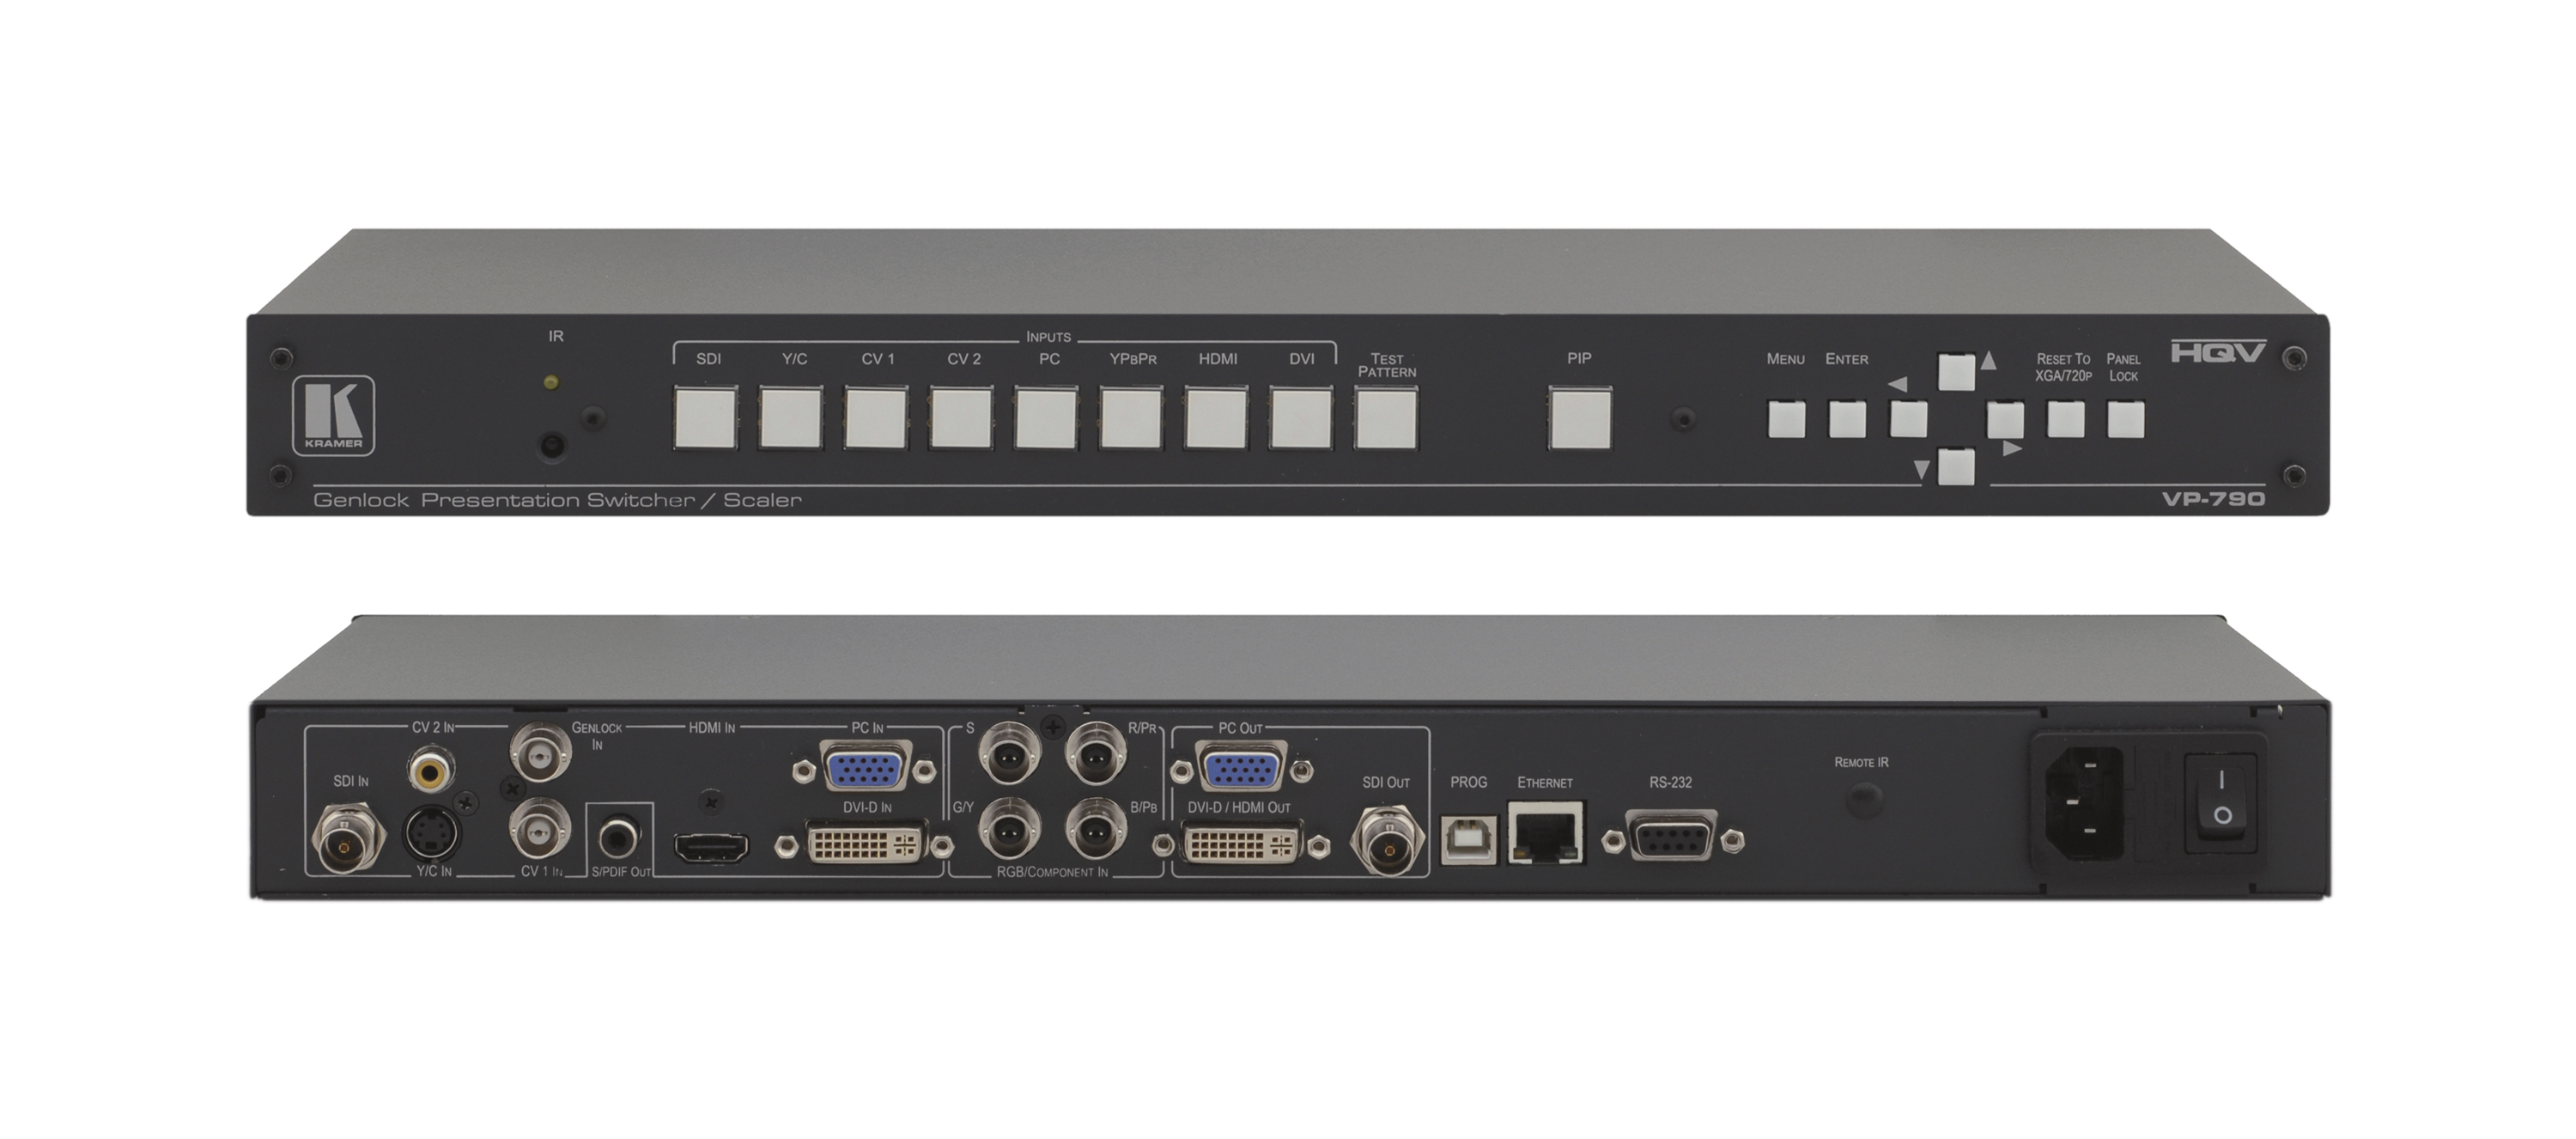 Масштабатор Kramer VP-790 видео и графики / коммутатор без подрывов сигнала.8 входов, включая DVI, HDMI иHD-SDI 3G,вход genlock, выходы VGA, DVI, HD-SDI 3G